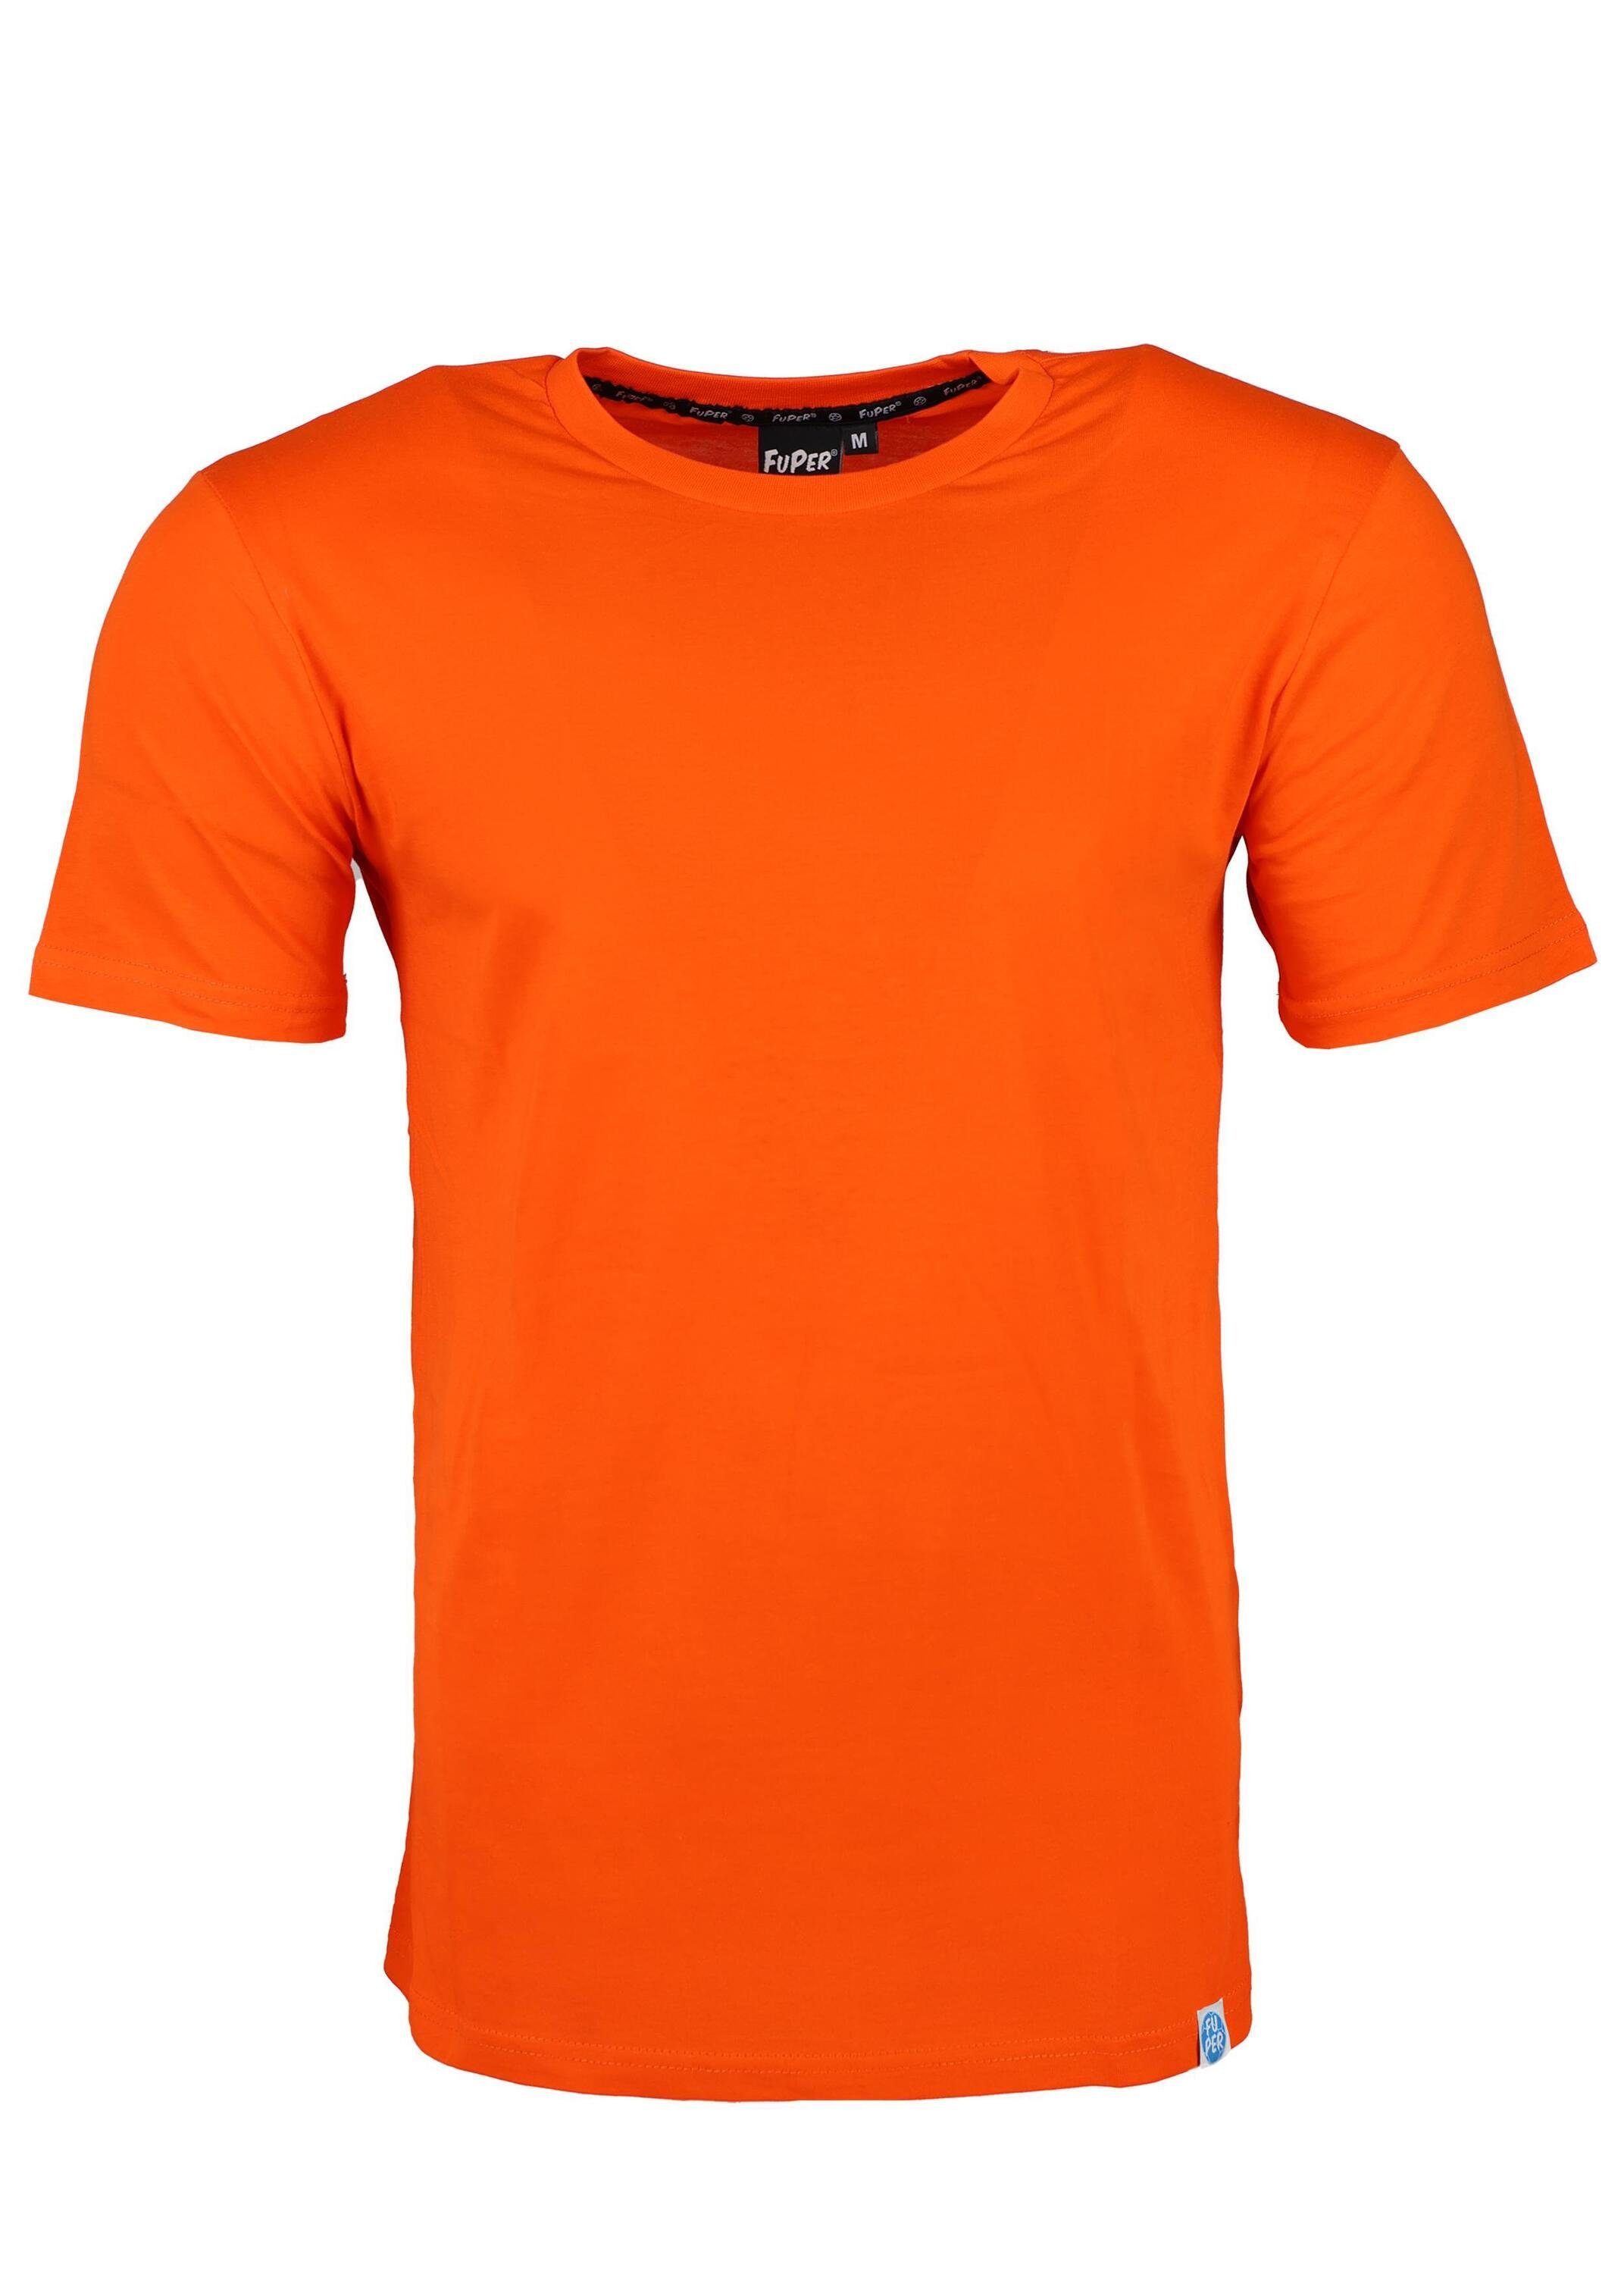 FuPer T-Shirt Karl für Kinder, aus Baumwolle, Fußball, Jugend Orange